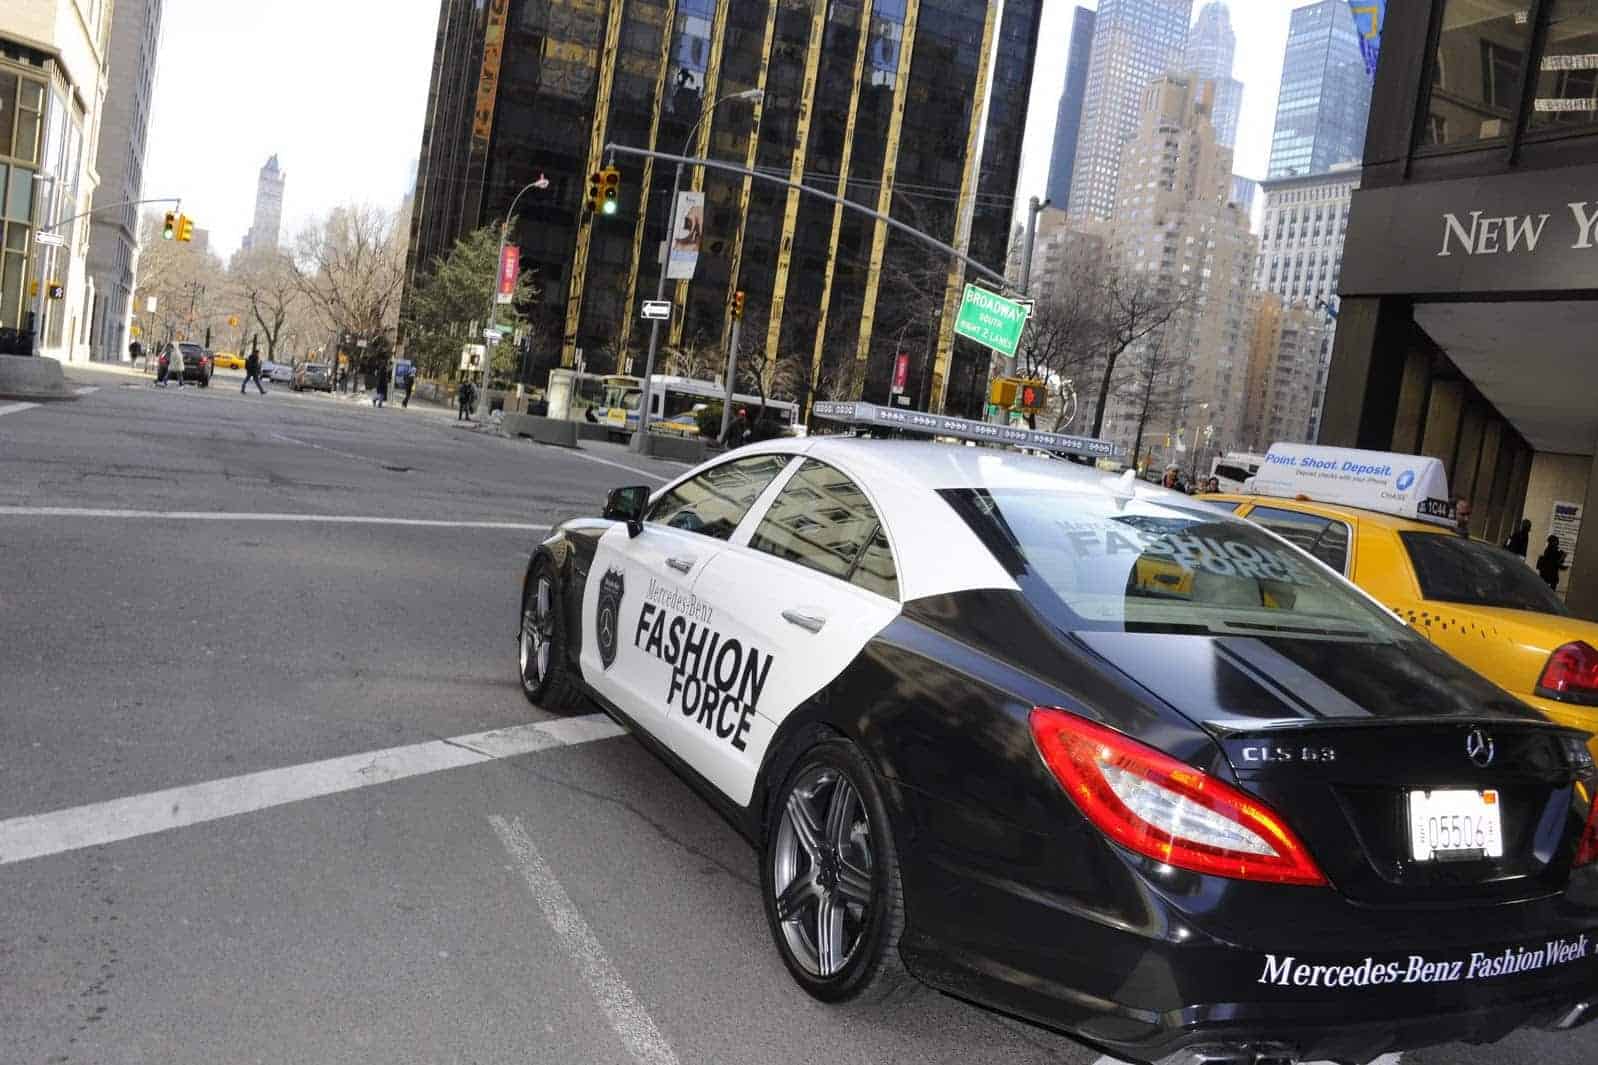 2012 Mercedes CLS 63 AMG Fashion Police Car 8